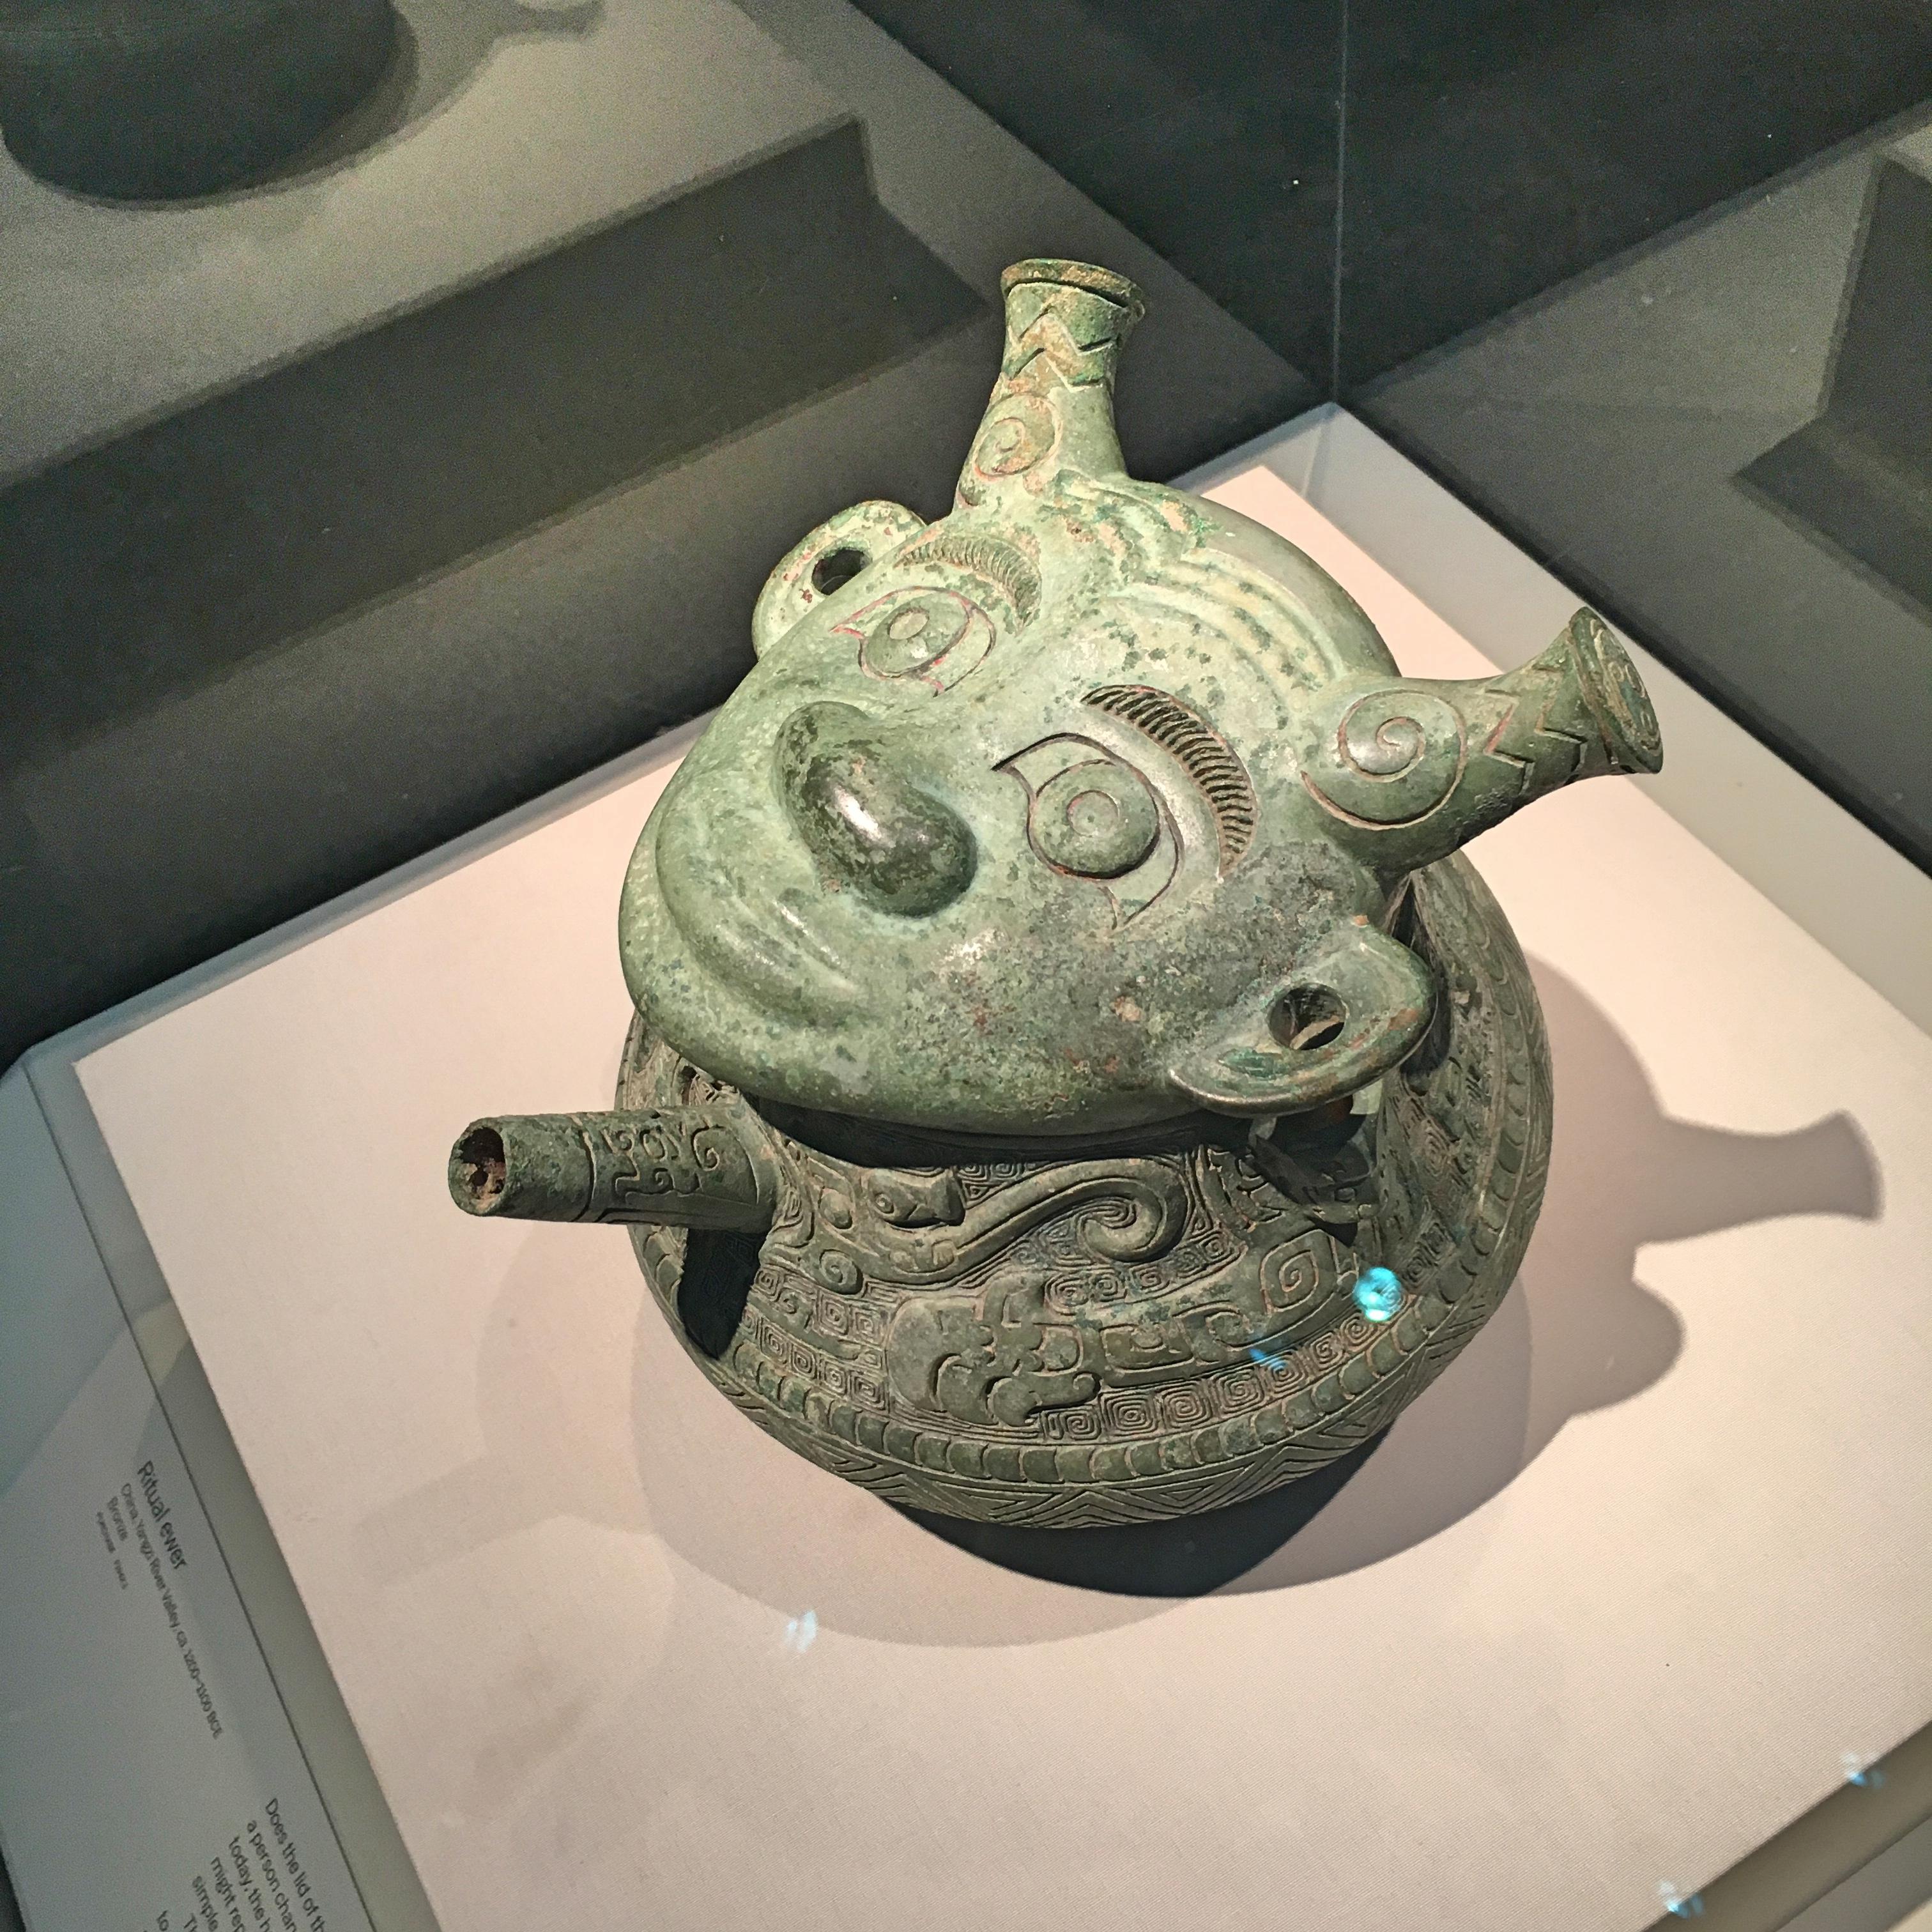 人面盉是河南安阳市殷墟出土的文物,收藏于美国费利尔美术馆.